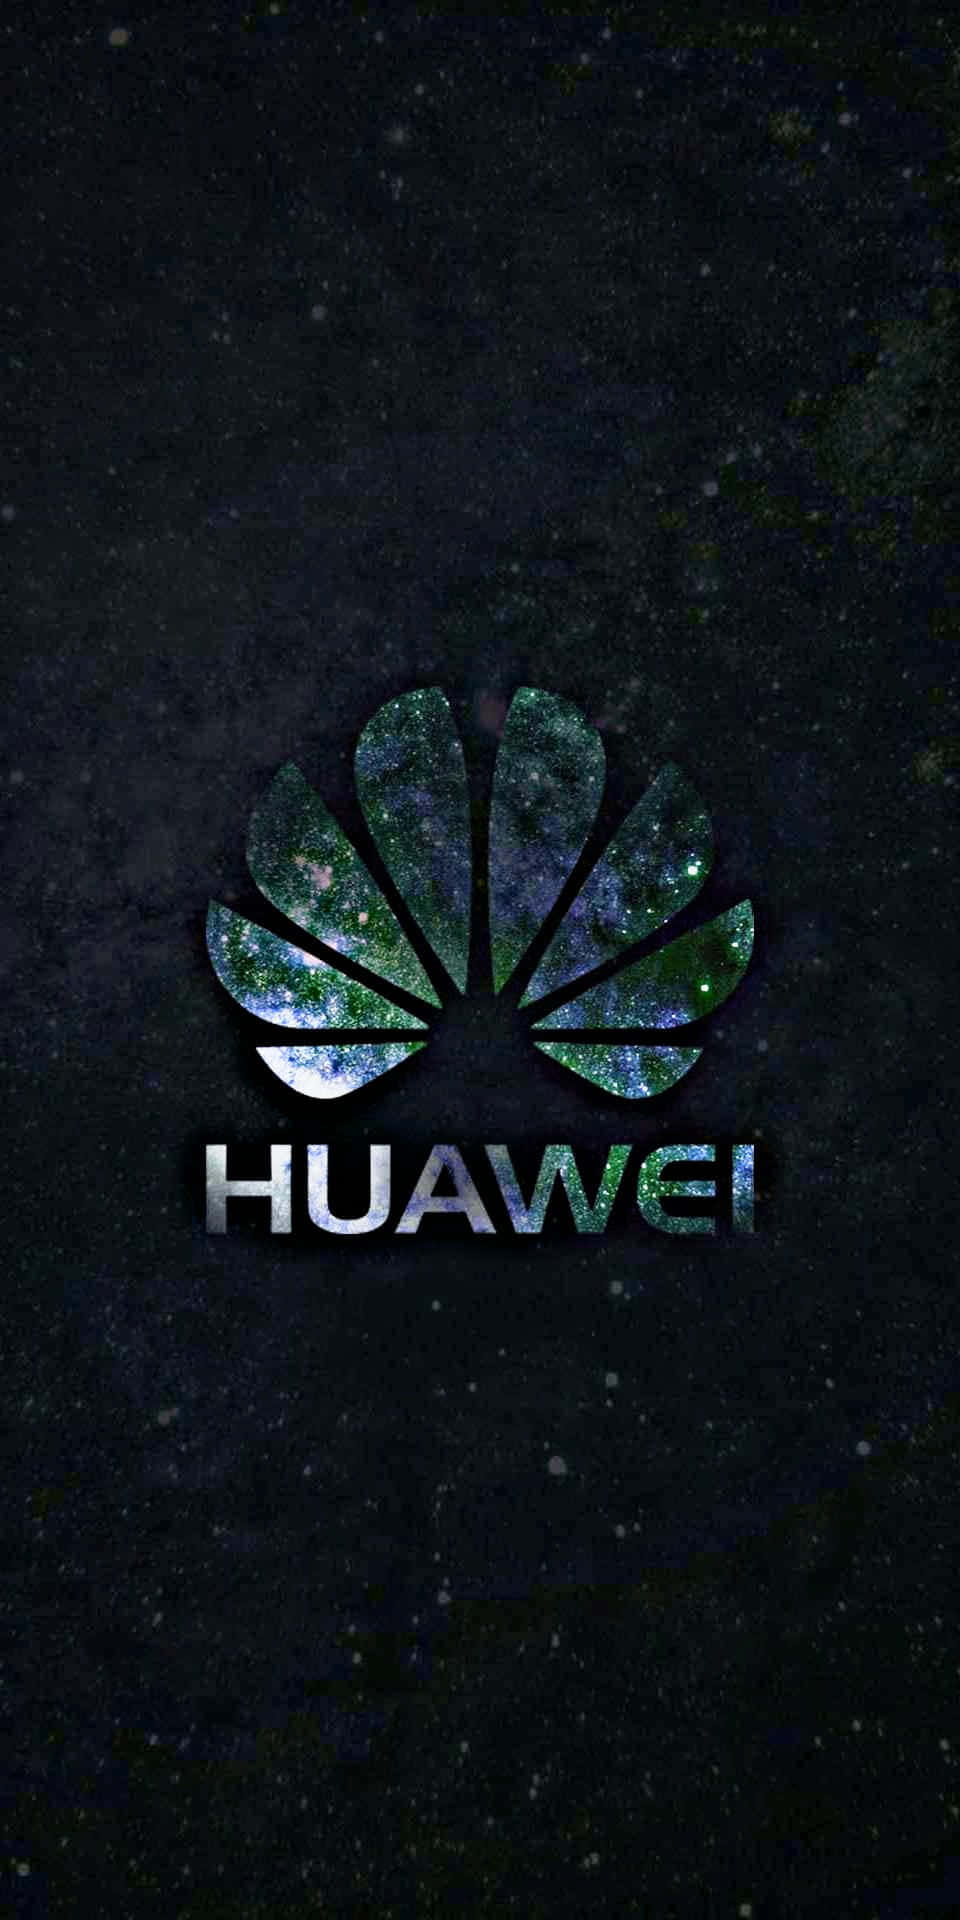 Presentandoil Prossimo Livello Nell'innovazione E Nella Tecnologia: Huawei